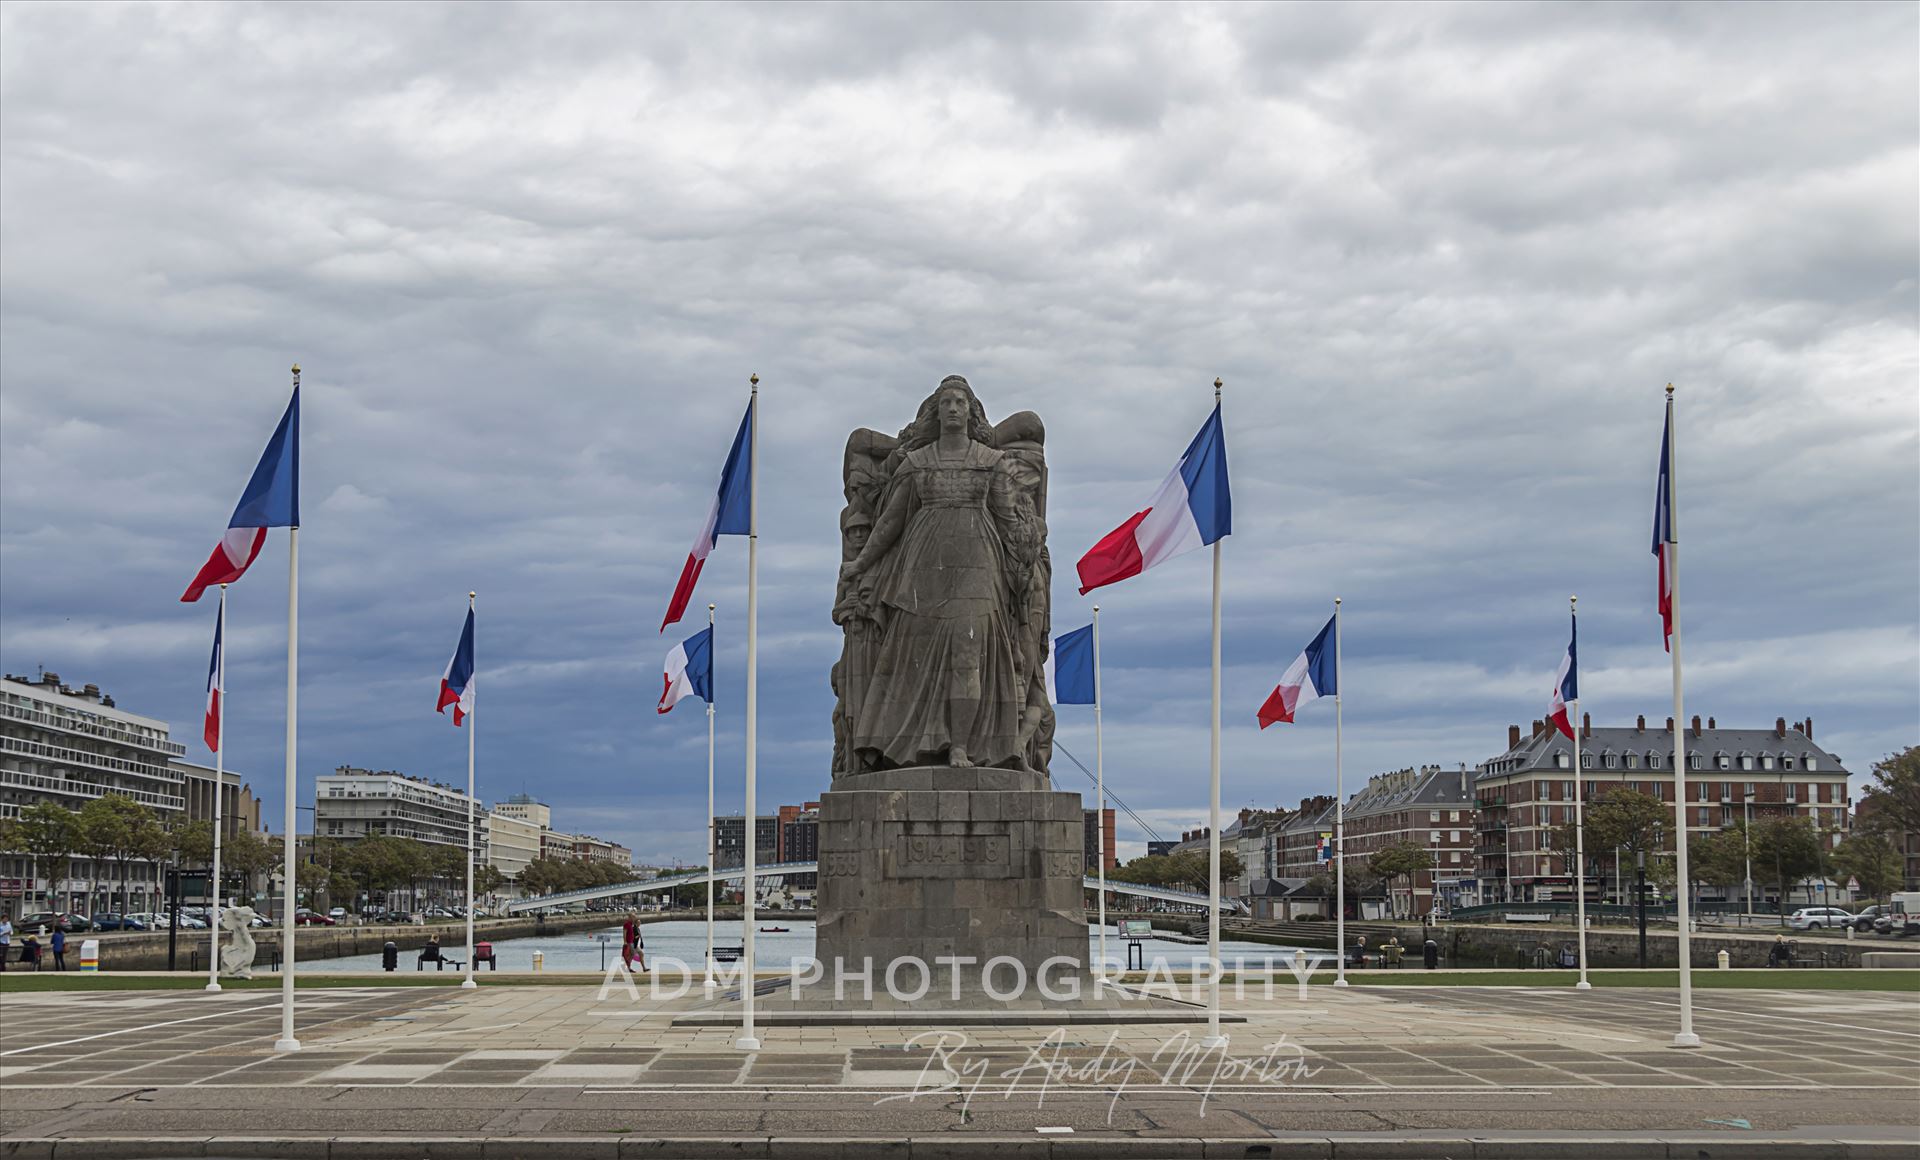 War Memorial In Le Havre, France. The War Memorial In Le Havre, France. by Andy Morton Photography